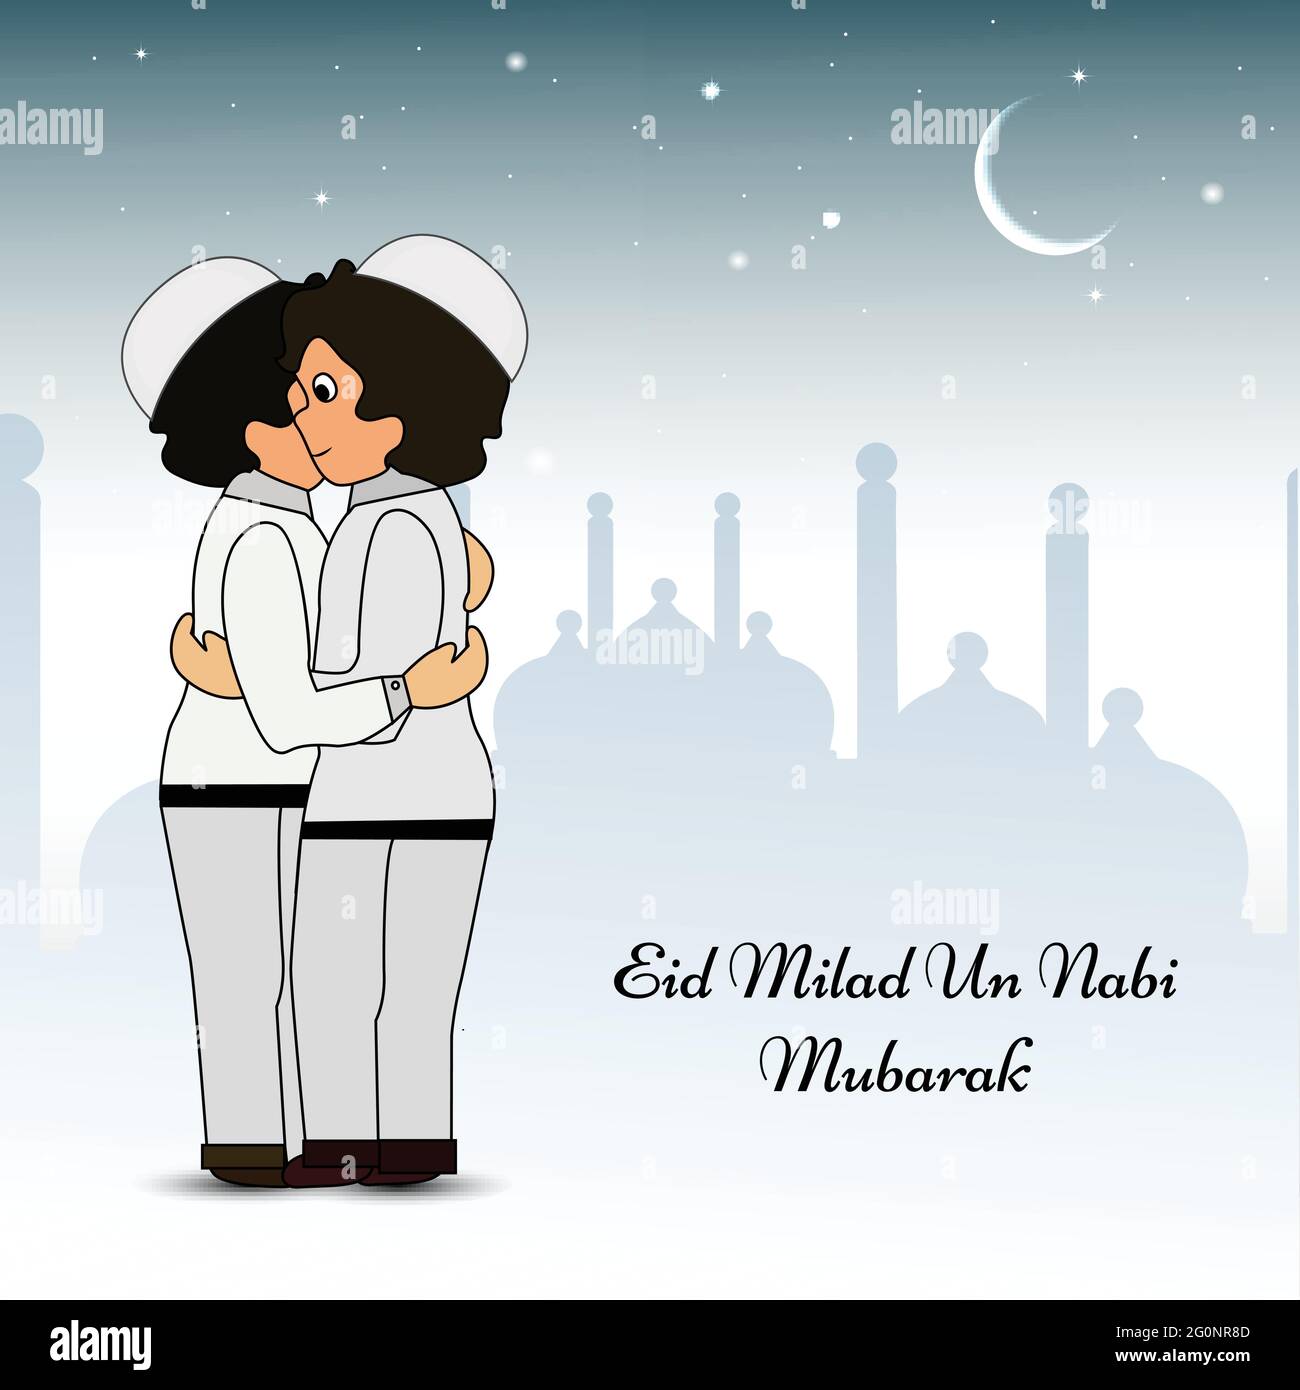 Eid Milad Un Nabi Mubarak Stock Vector Image & Art - Alamy